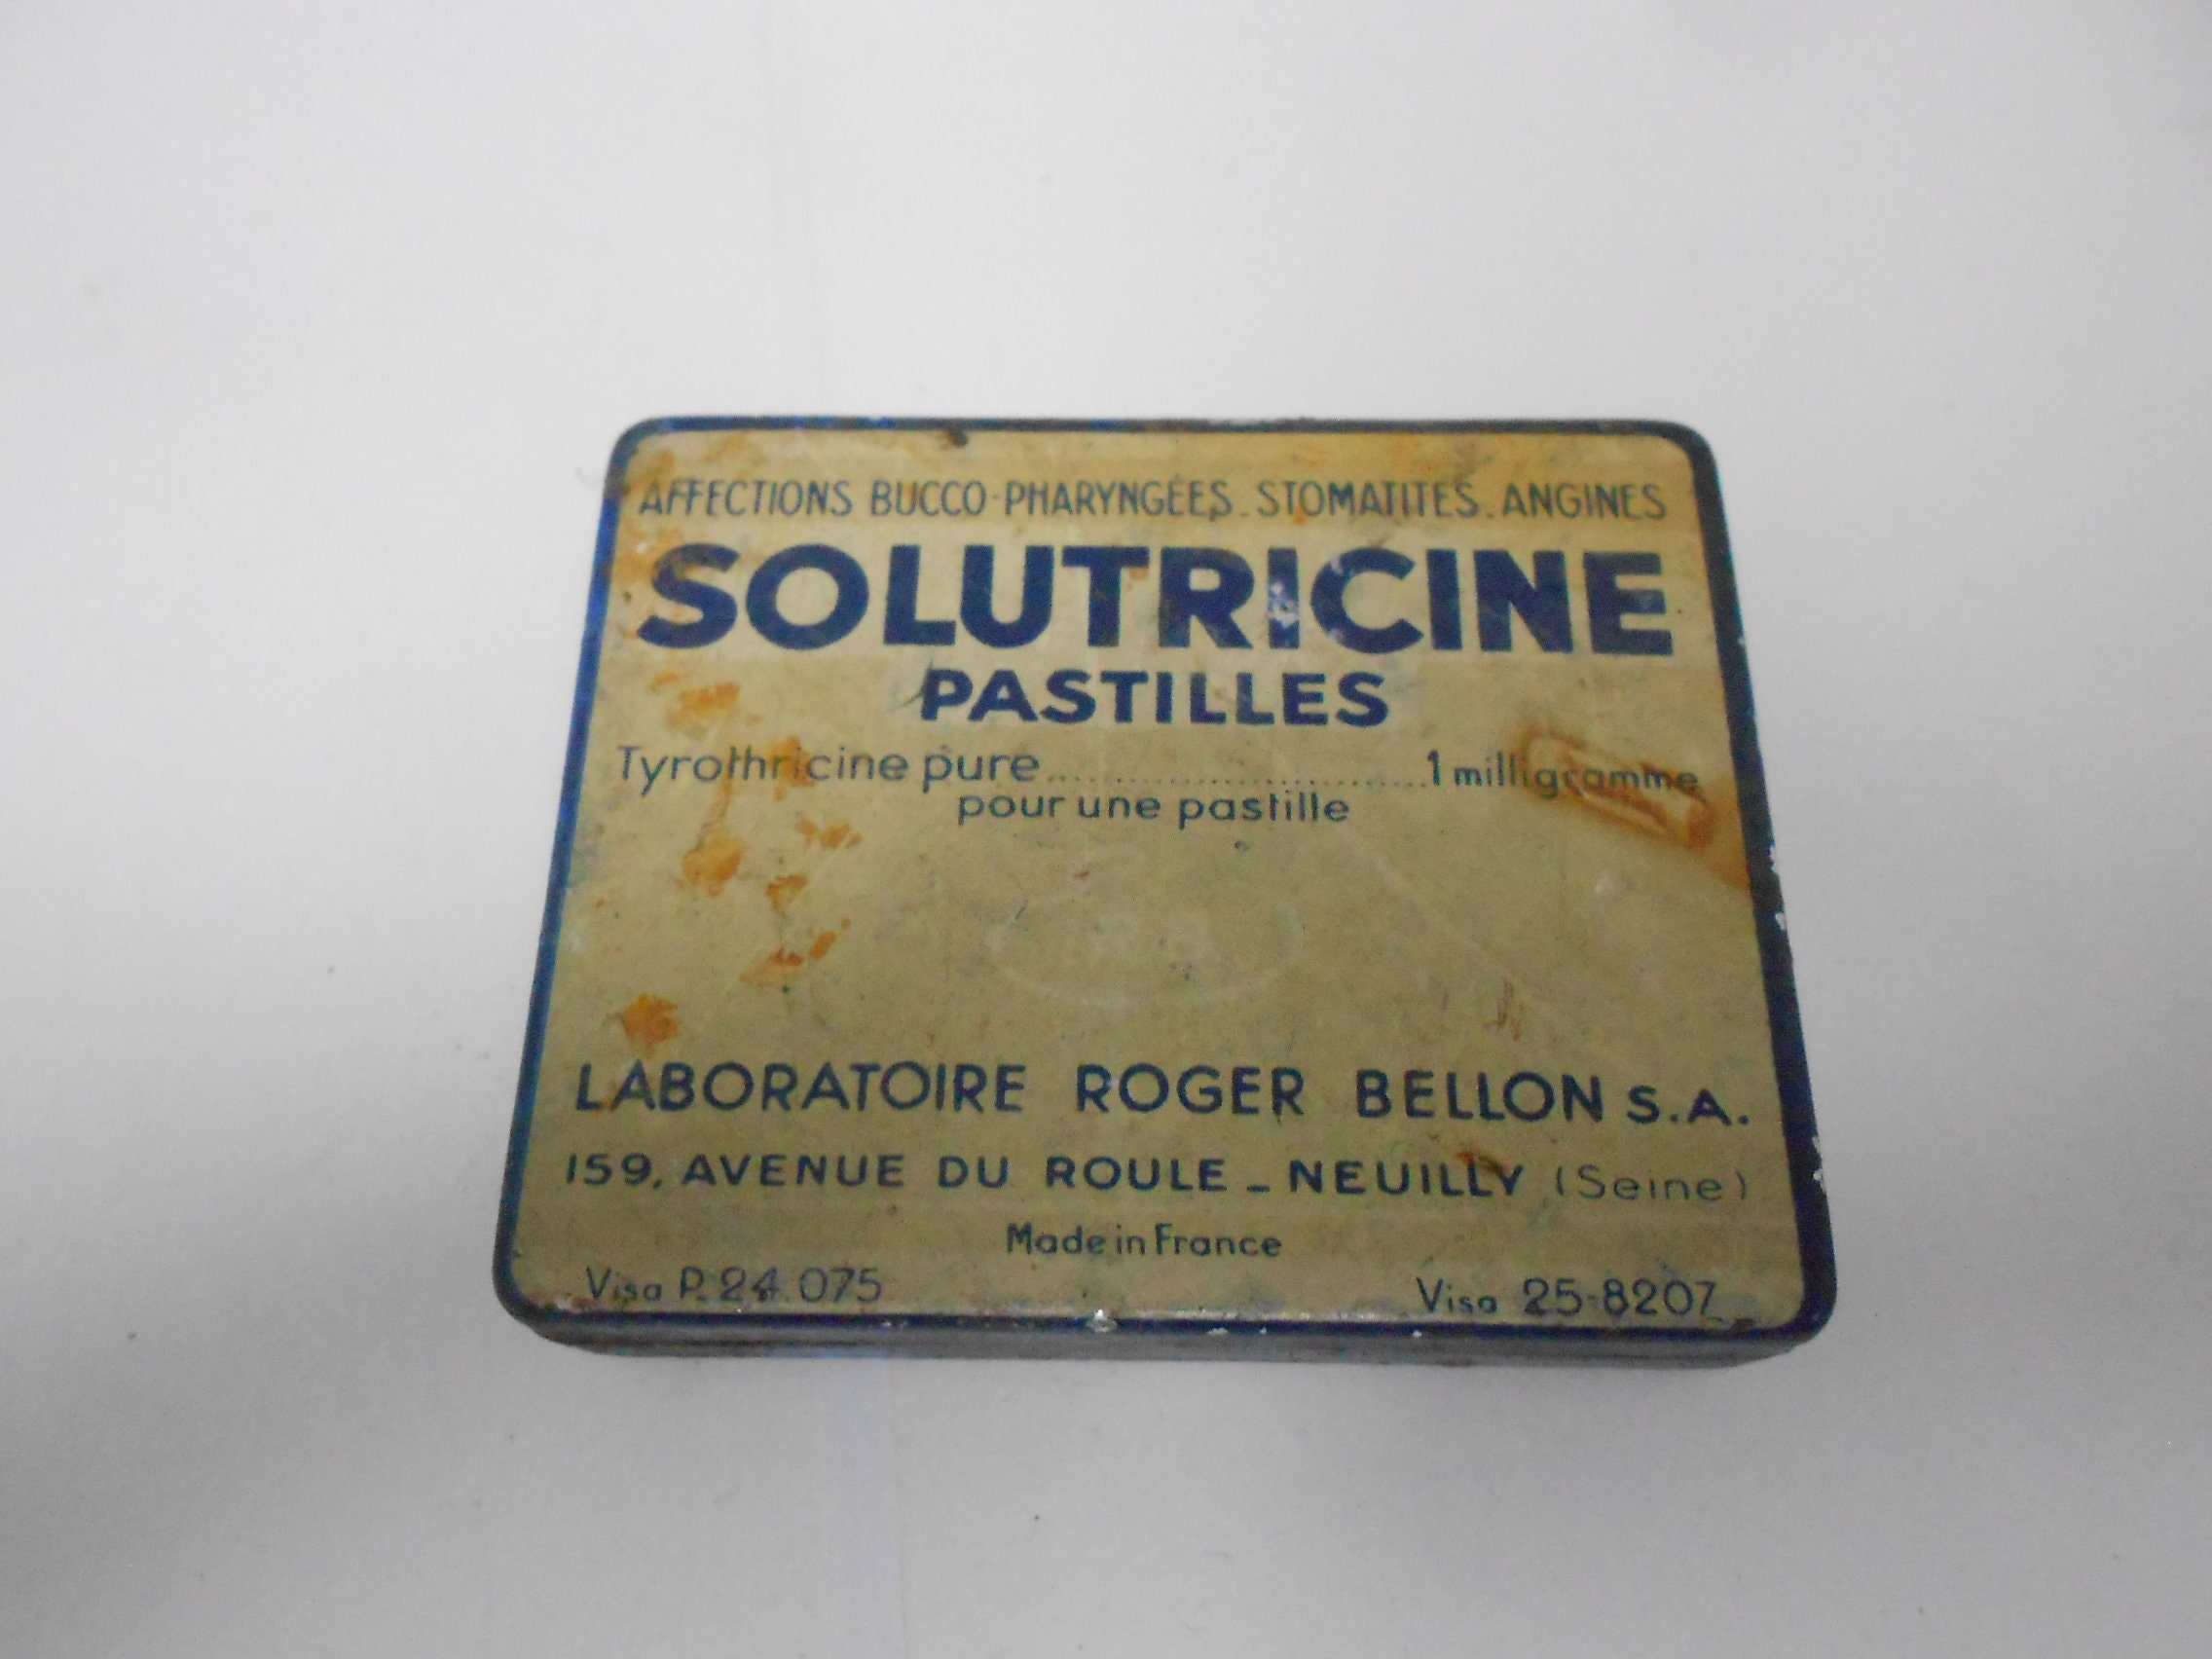 Pipette nasale de Cauterets en verre soufflé dans son étui en bois.  1910/1920s. Hygiène nasale. Collection. Pharmacie ancienne -  France